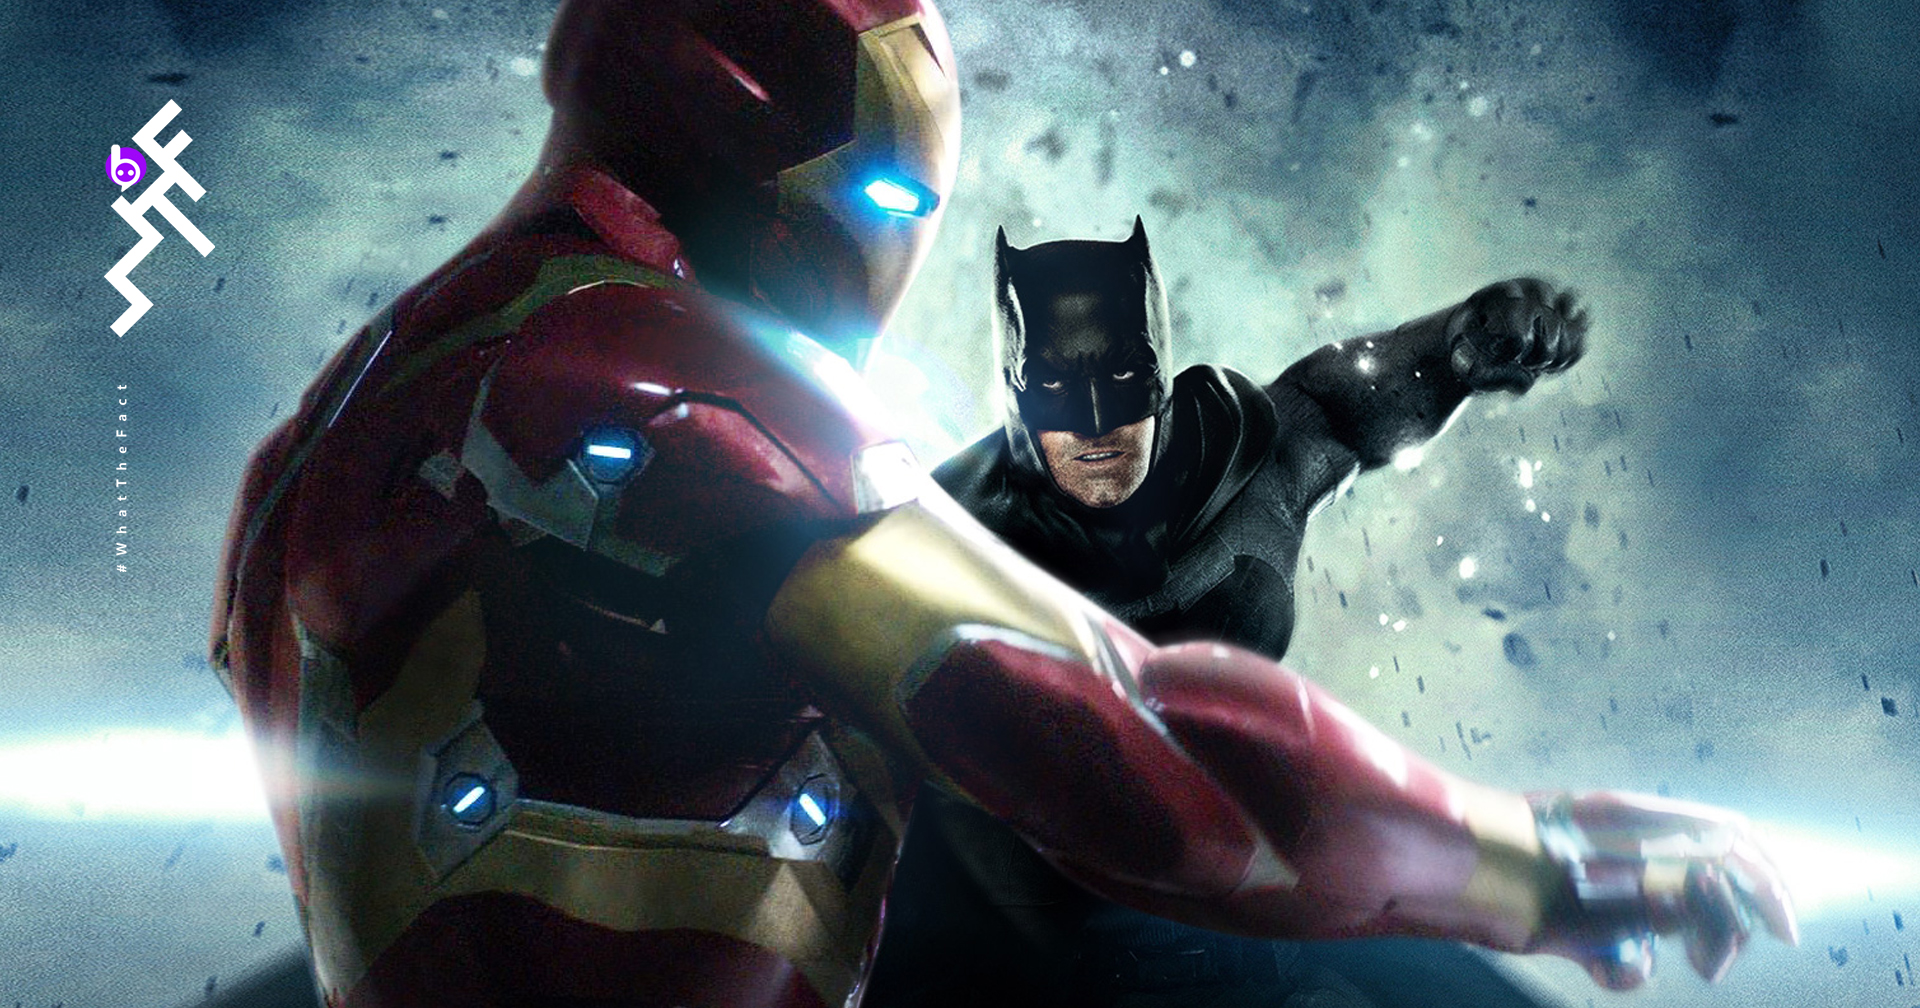 รู้หรือไม่? Iron Man “ขี้งก” กว่าฮีโรค่ายคู่แข่งอย่าง  Batman!